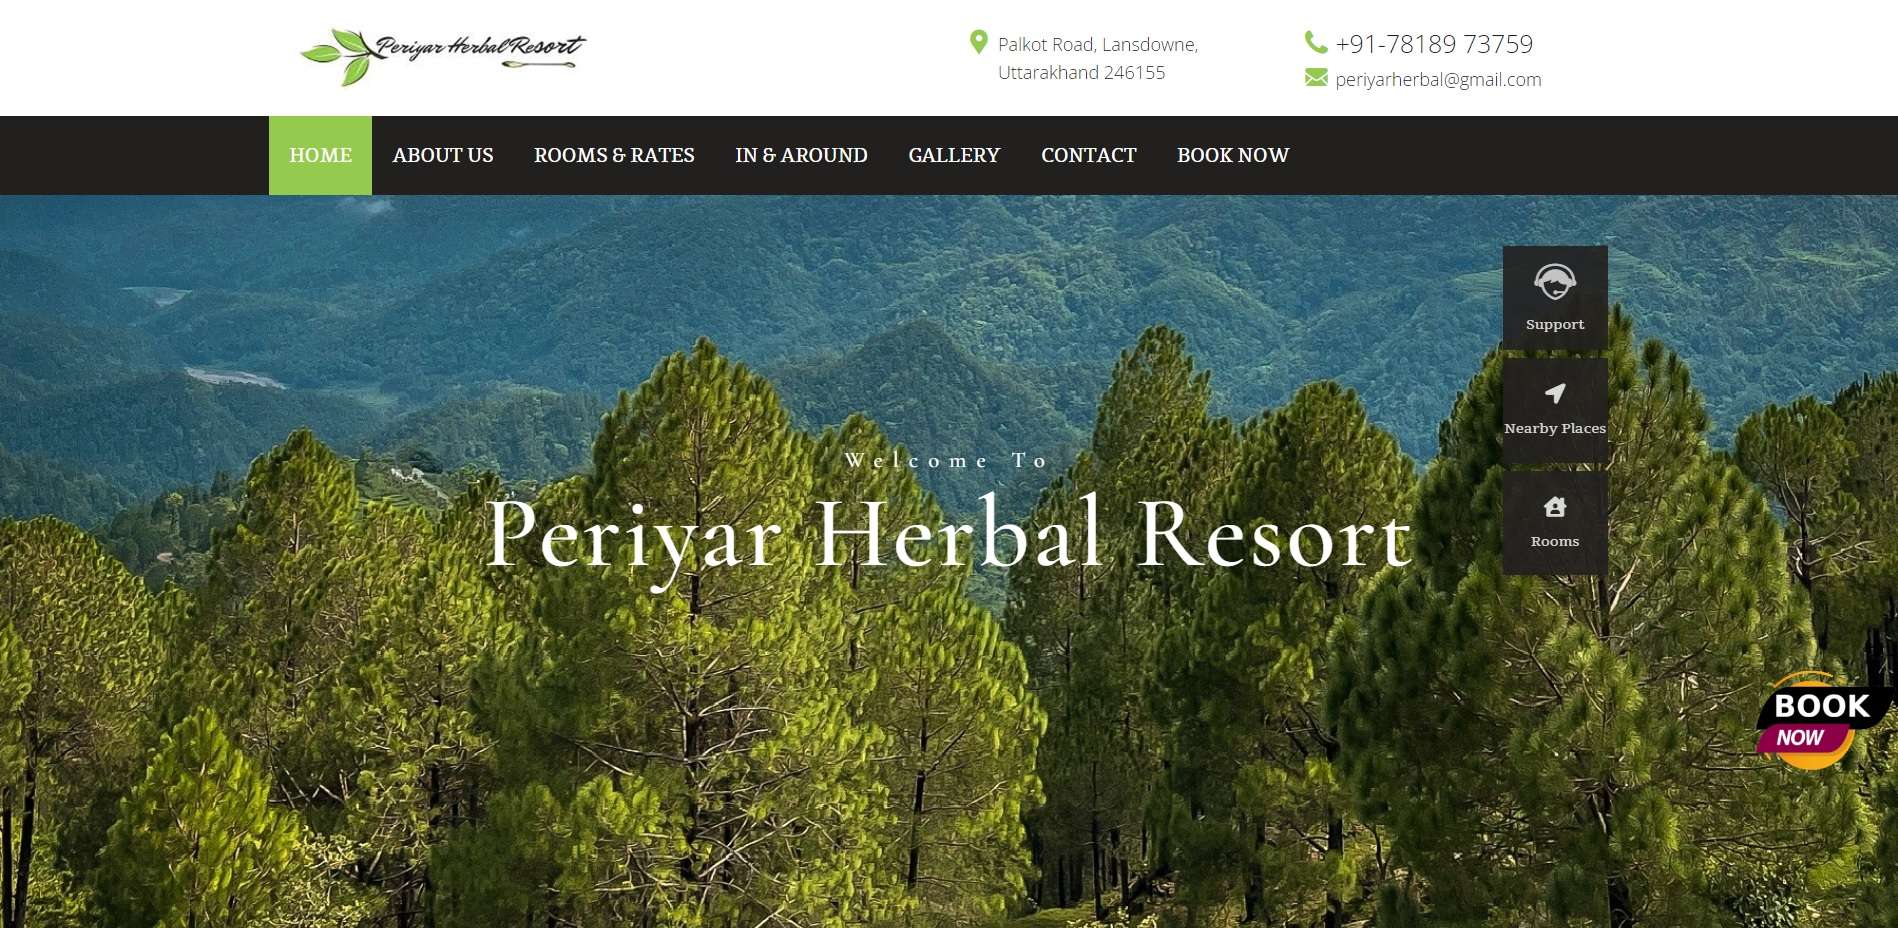 Periyar Herbal Resort